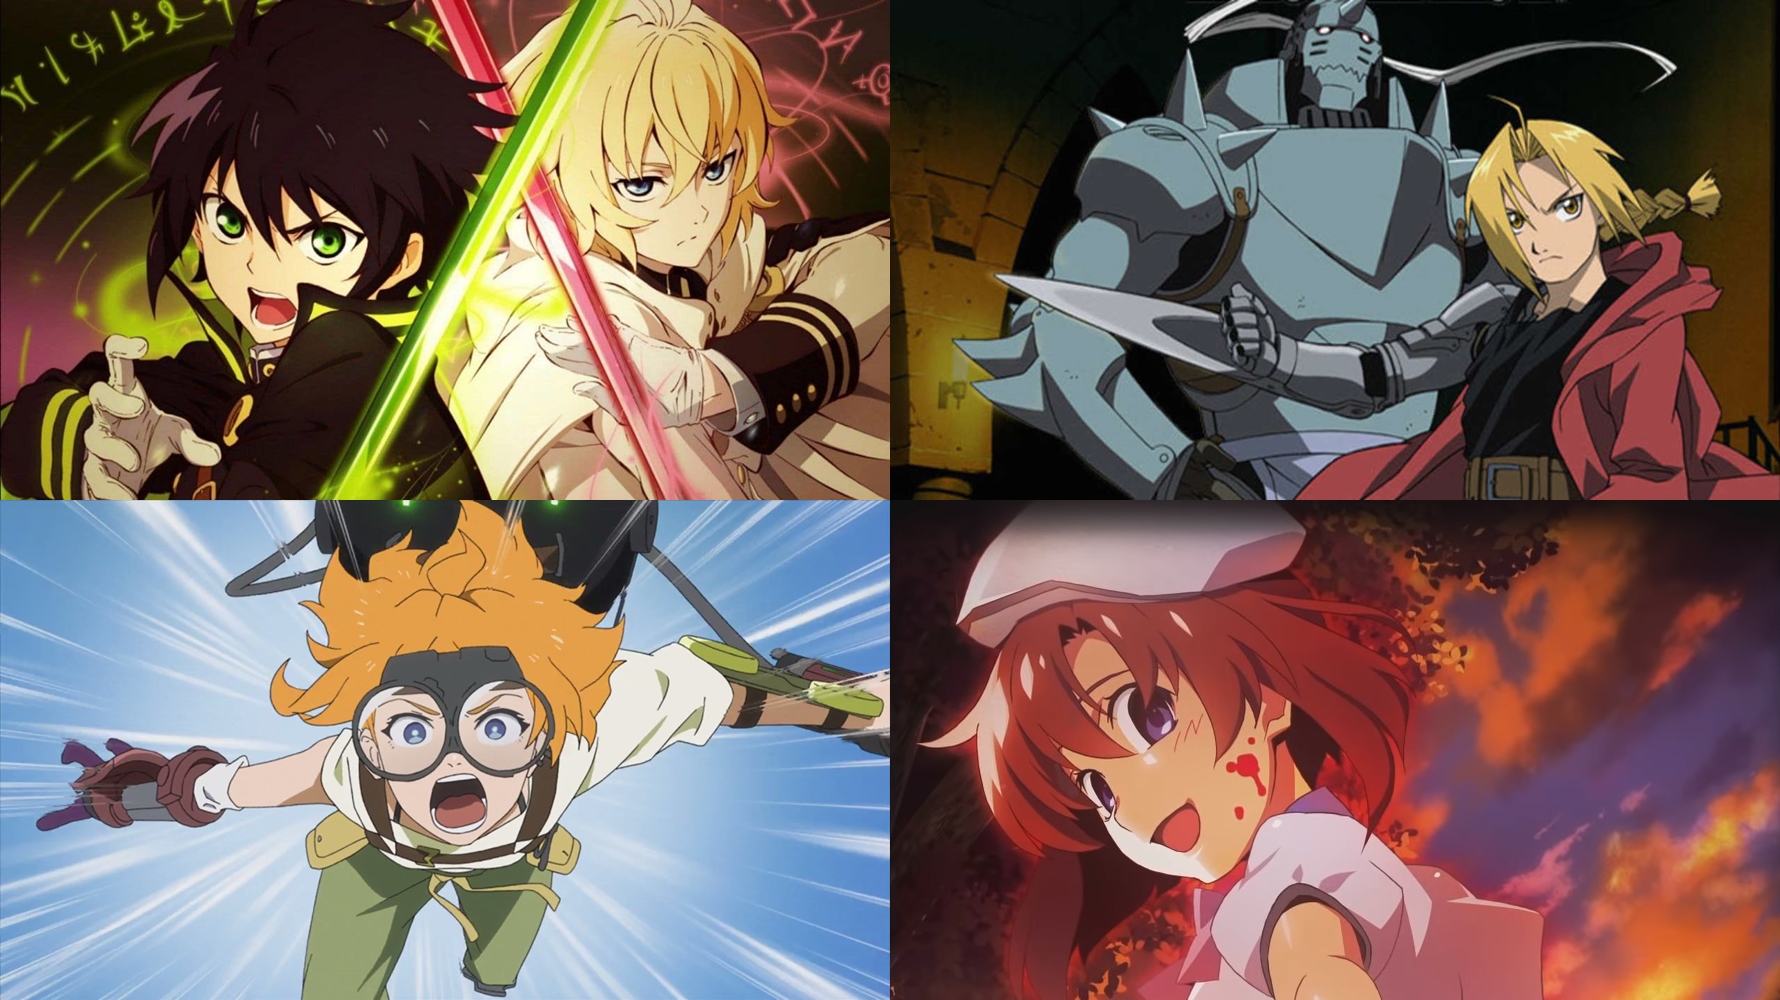 Kenja No Mago Online - Assistir anime completo dublado e legendado